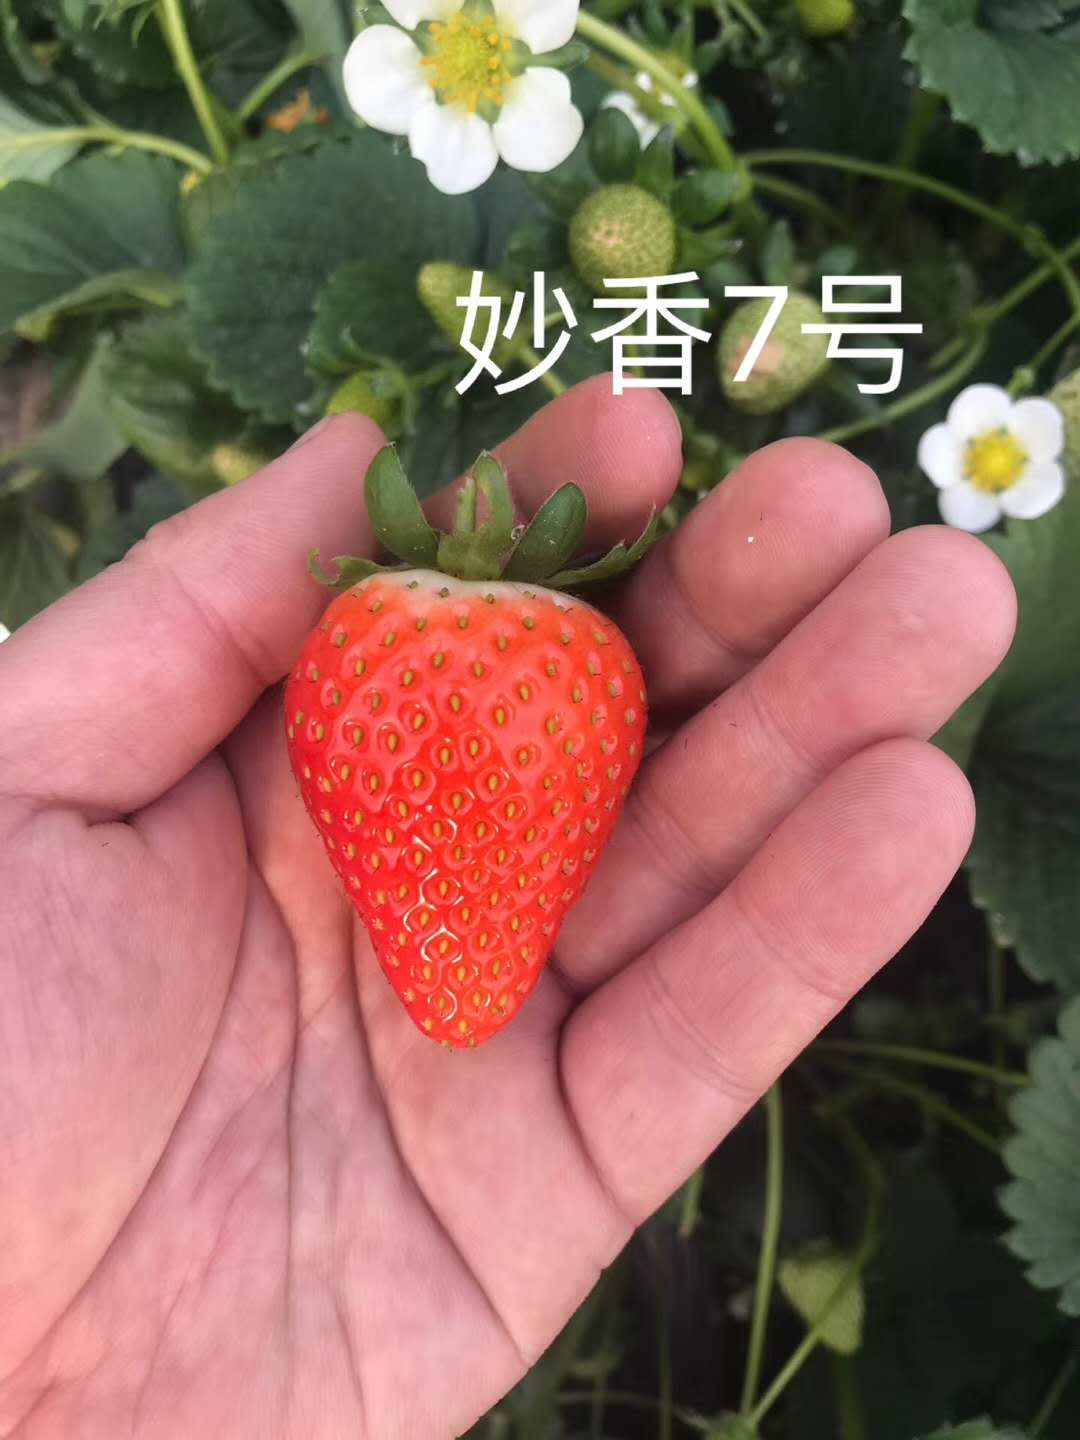 白雪草莓苗种植技术、丰香草莓苗本地卖苗价格